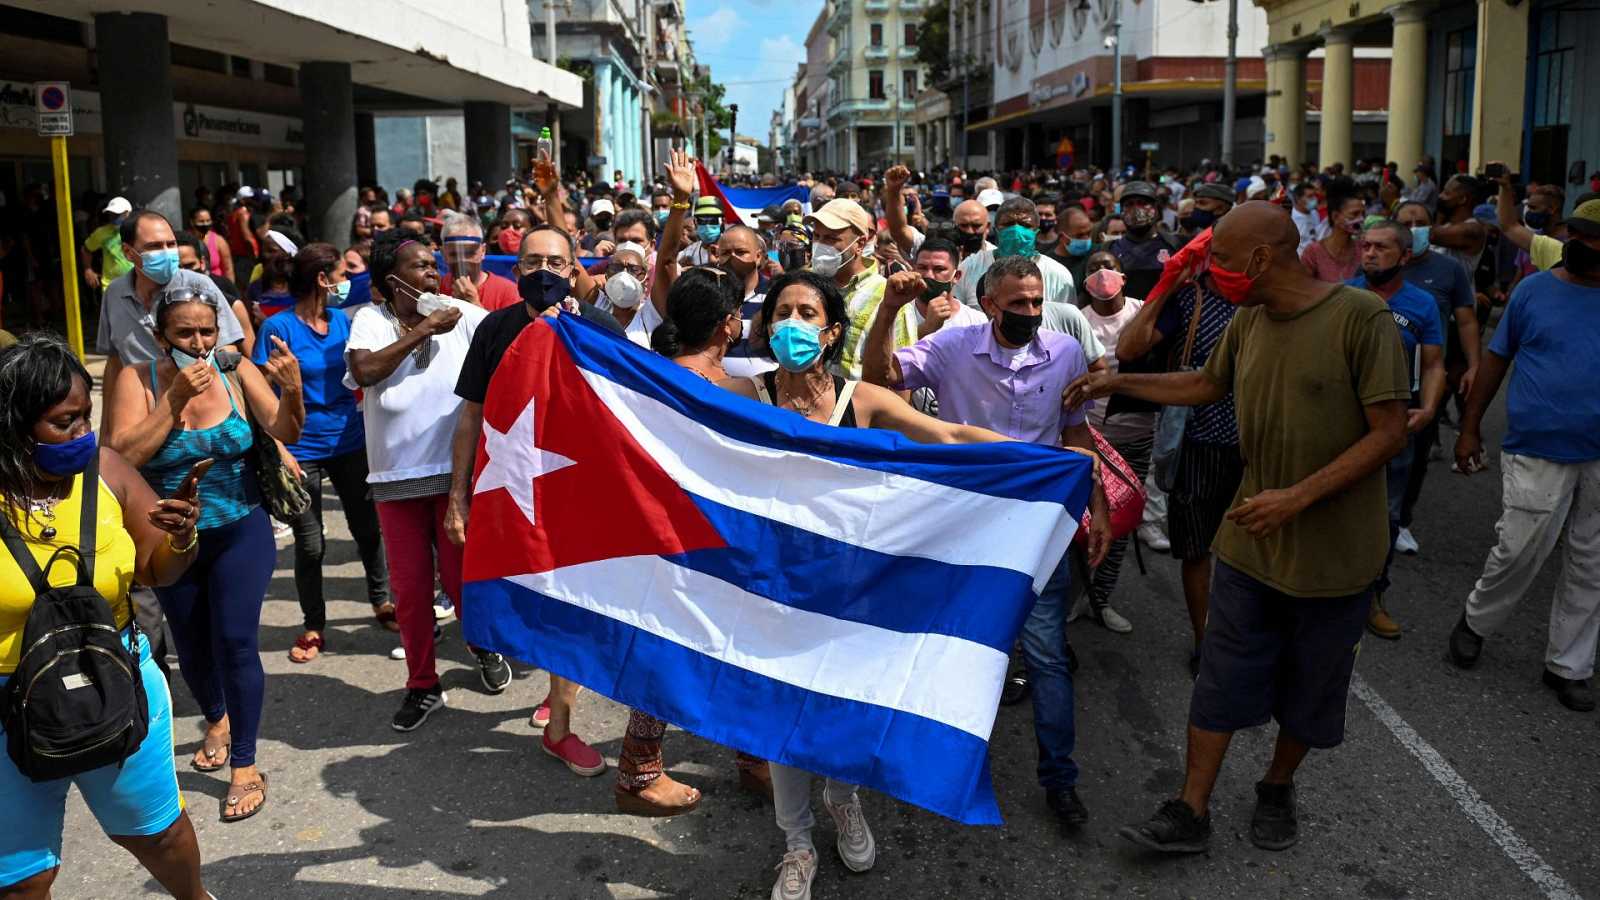 Luis Zúñiga: El Club de París debe dejar de financiar la represión en Cuba